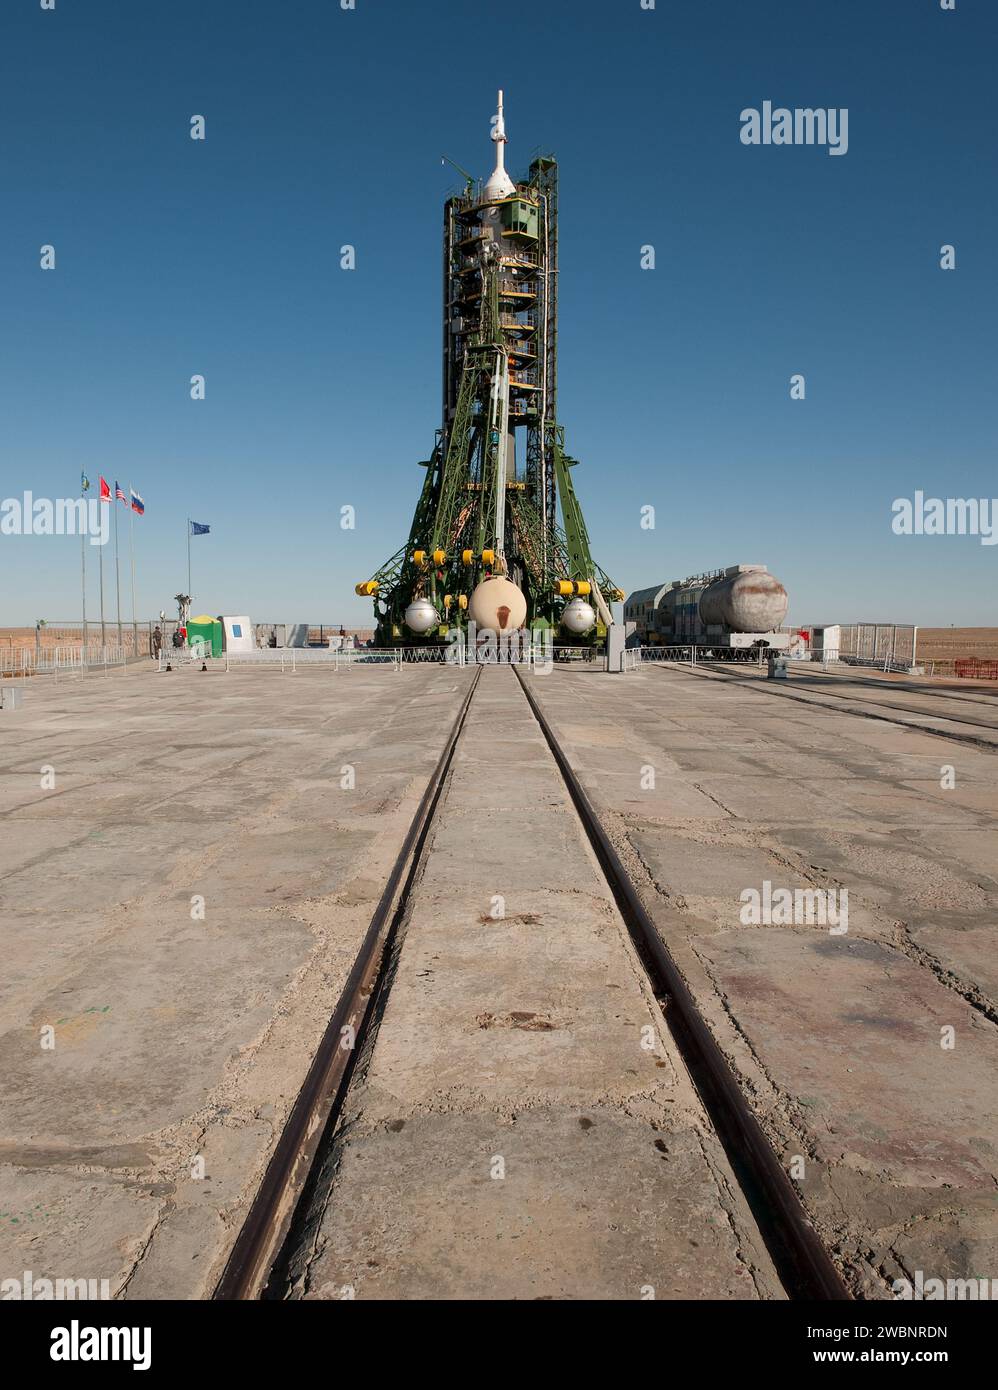 Il razzo Soyuz è pronto sulla piattaforma di lancio a Baikonur, Kazakistan, martedì 29 settembre, 2009 il giorno prima dell'ingegnere di volo della Expedition 21 Maxim Suraev, l'ingegnere di volo della Expedition 21 Jeffrey N. Williams e il partecipante dello Spaceflight Guy Laliberté sono programmati per il lancio verso la stazione spaziale Internazionale (ISS). Foto Stock